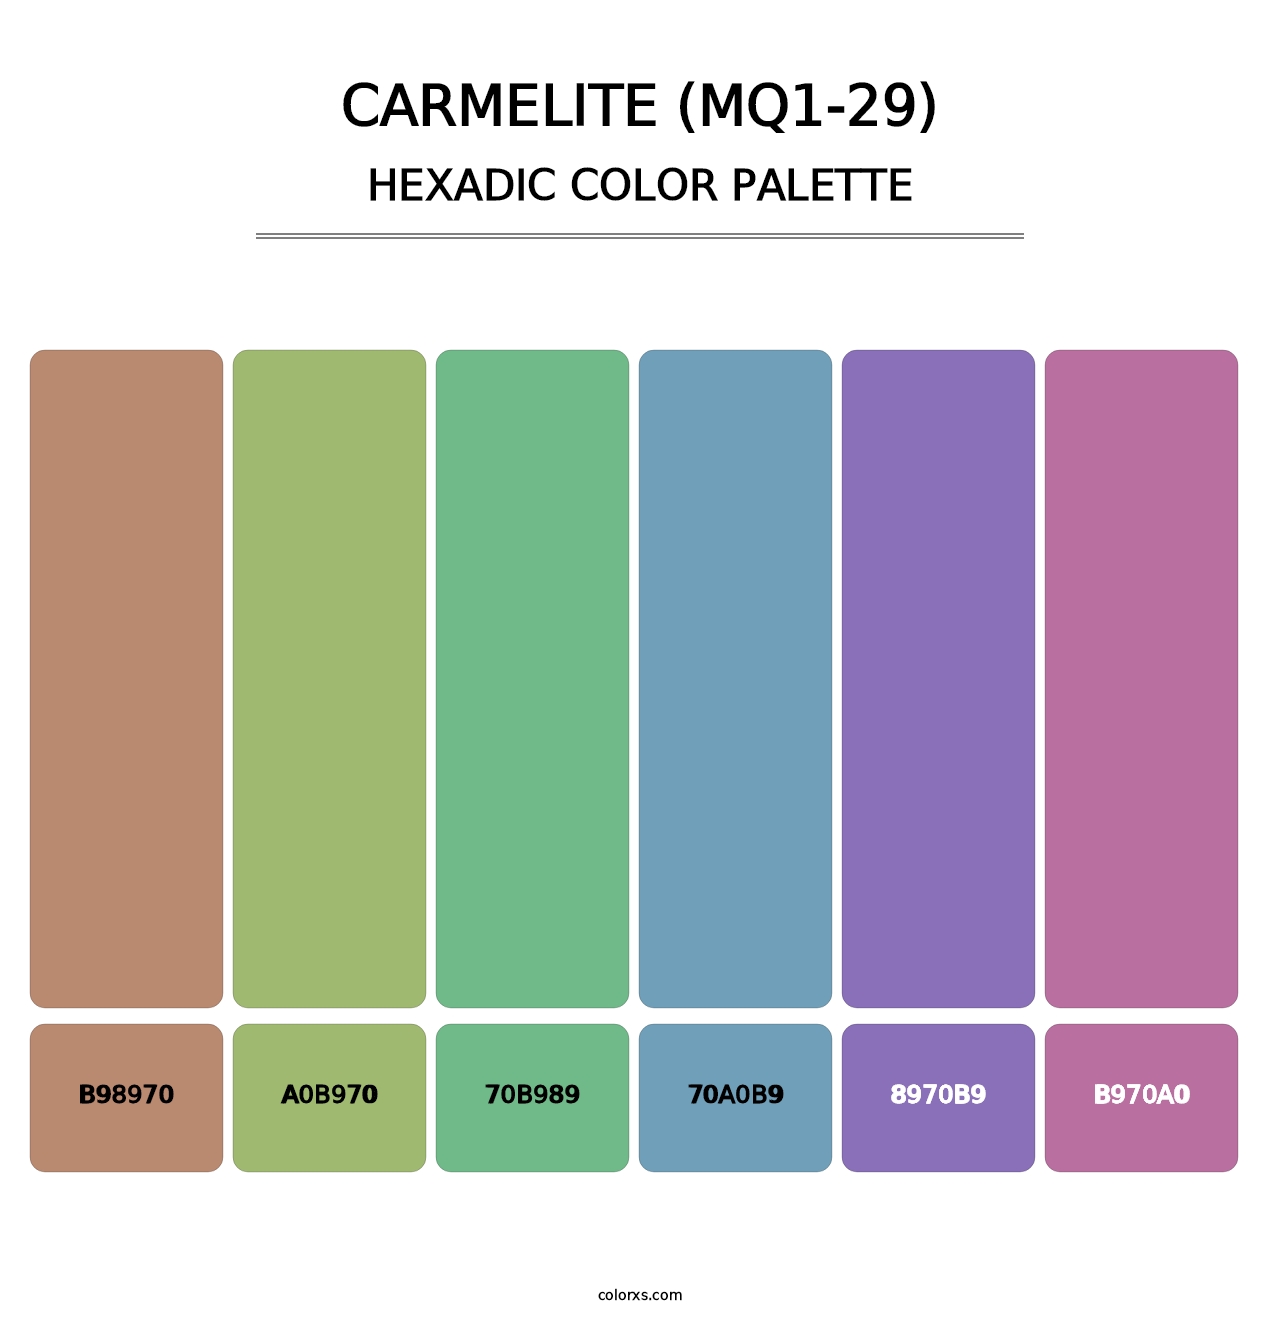 Carmelite (MQ1-29) - Hexadic Color Palette